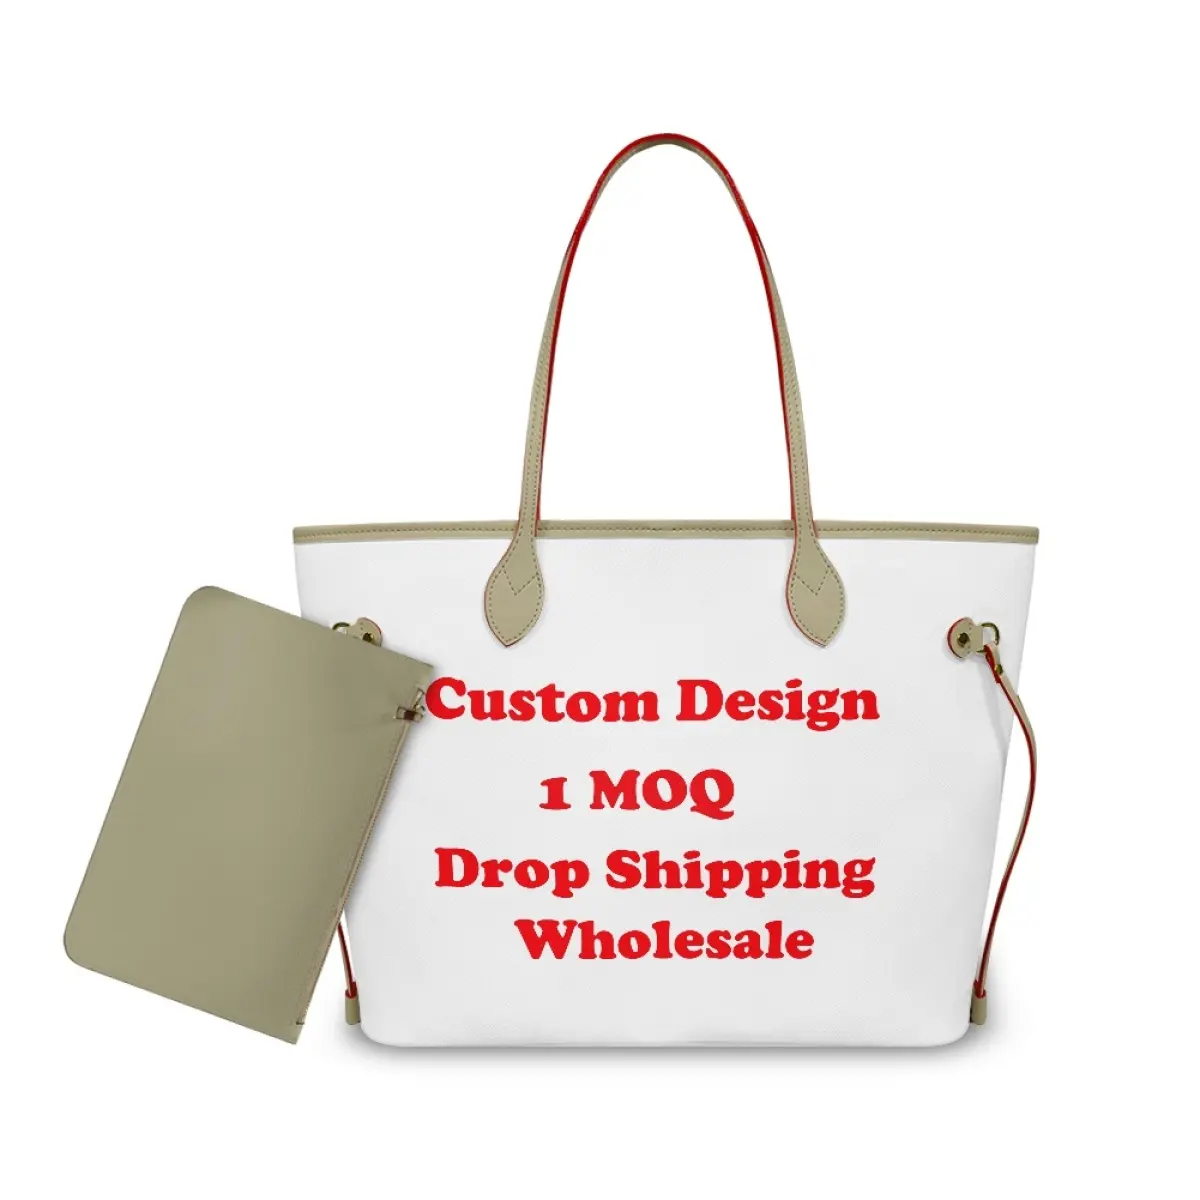 Benutzer definierte Damen Geldbörse Handtaschen Große Kapazität 2 Stück Lady Print On Demand Pu Cross body Neueste Trendy Einkaufstasche Mit Reiß verschluss tasche